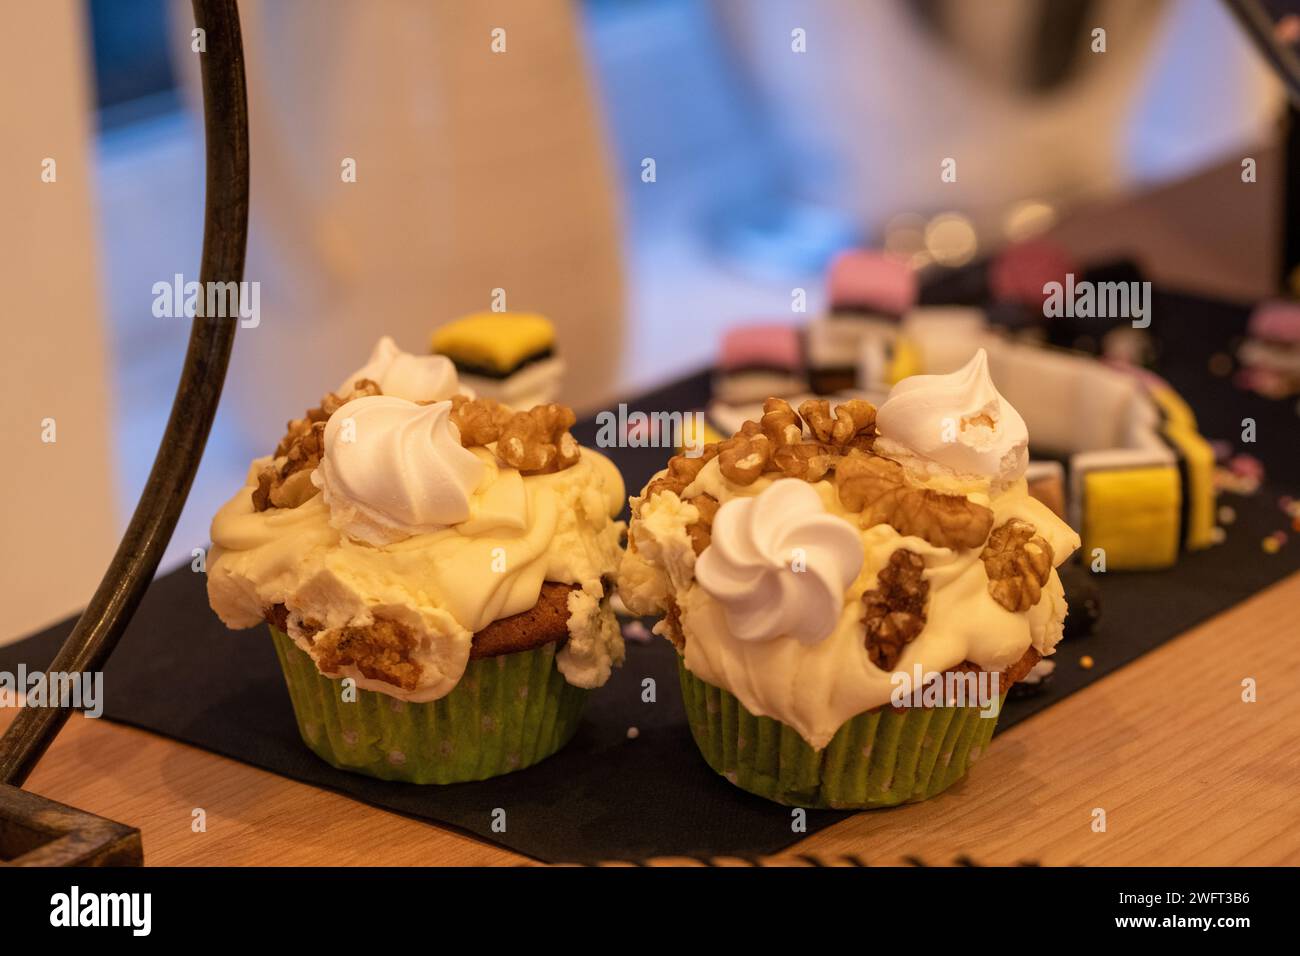 Ein Paar hausgemachter Kaffee und Walnuss-Cupcakes mit cremiger Kaffeebutter-Glasur, Walnussstückchen und Miniatur-Baisons Stockfoto